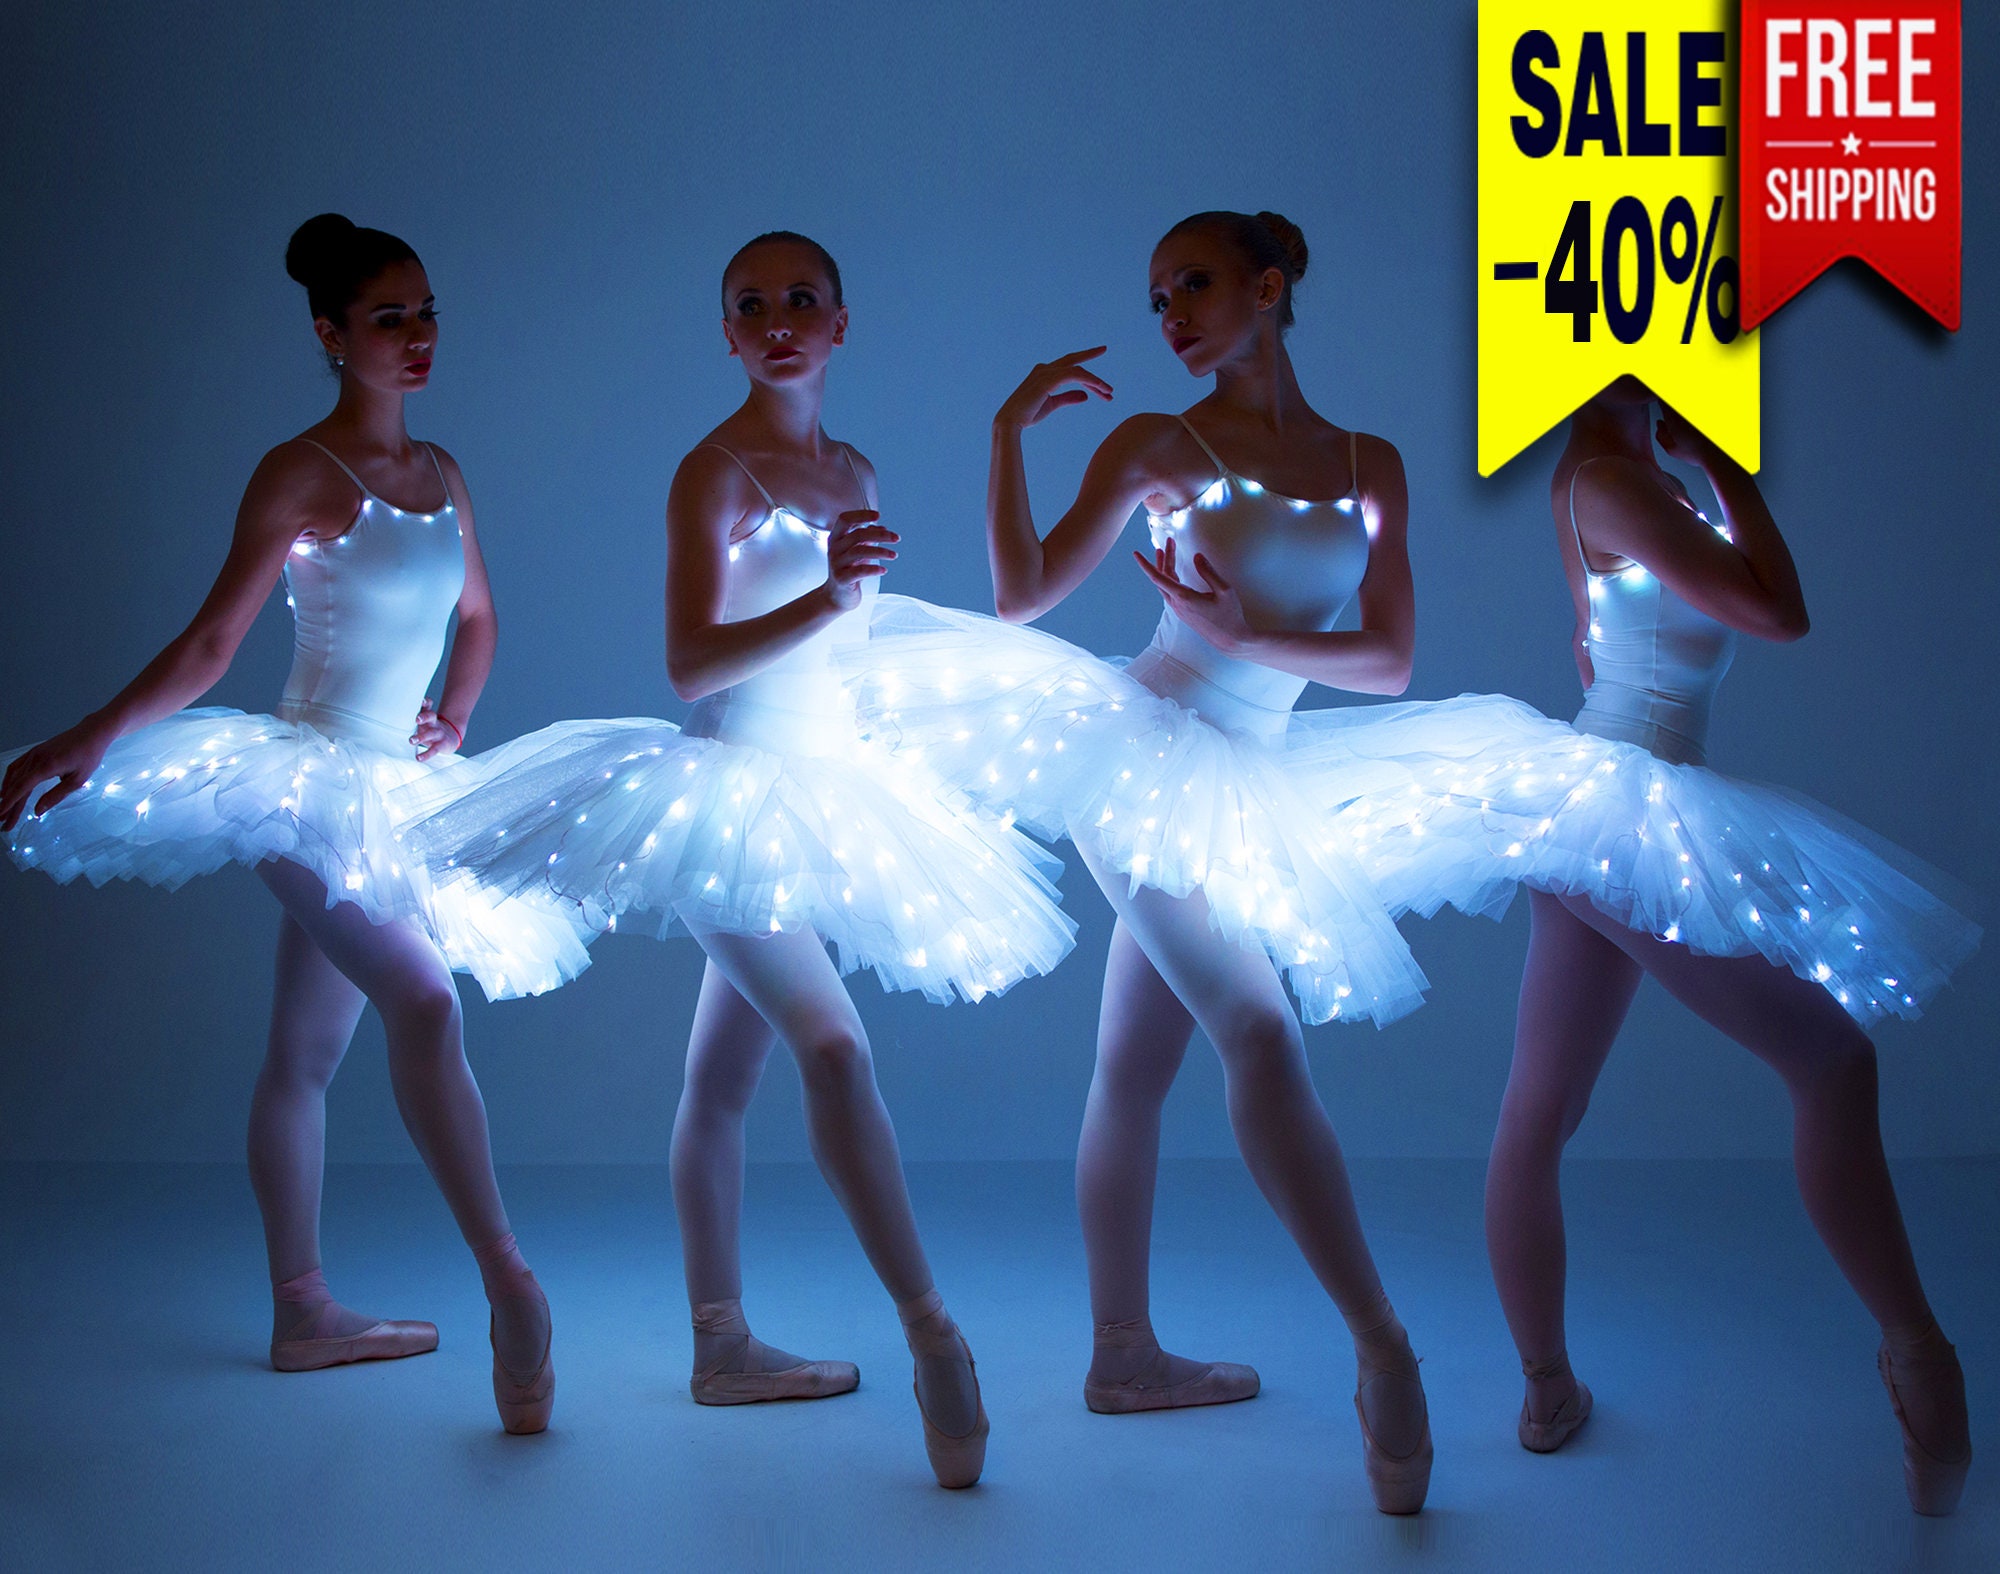 Smart LED Tutu Light up Ballerina Costume Glowing | Etsy